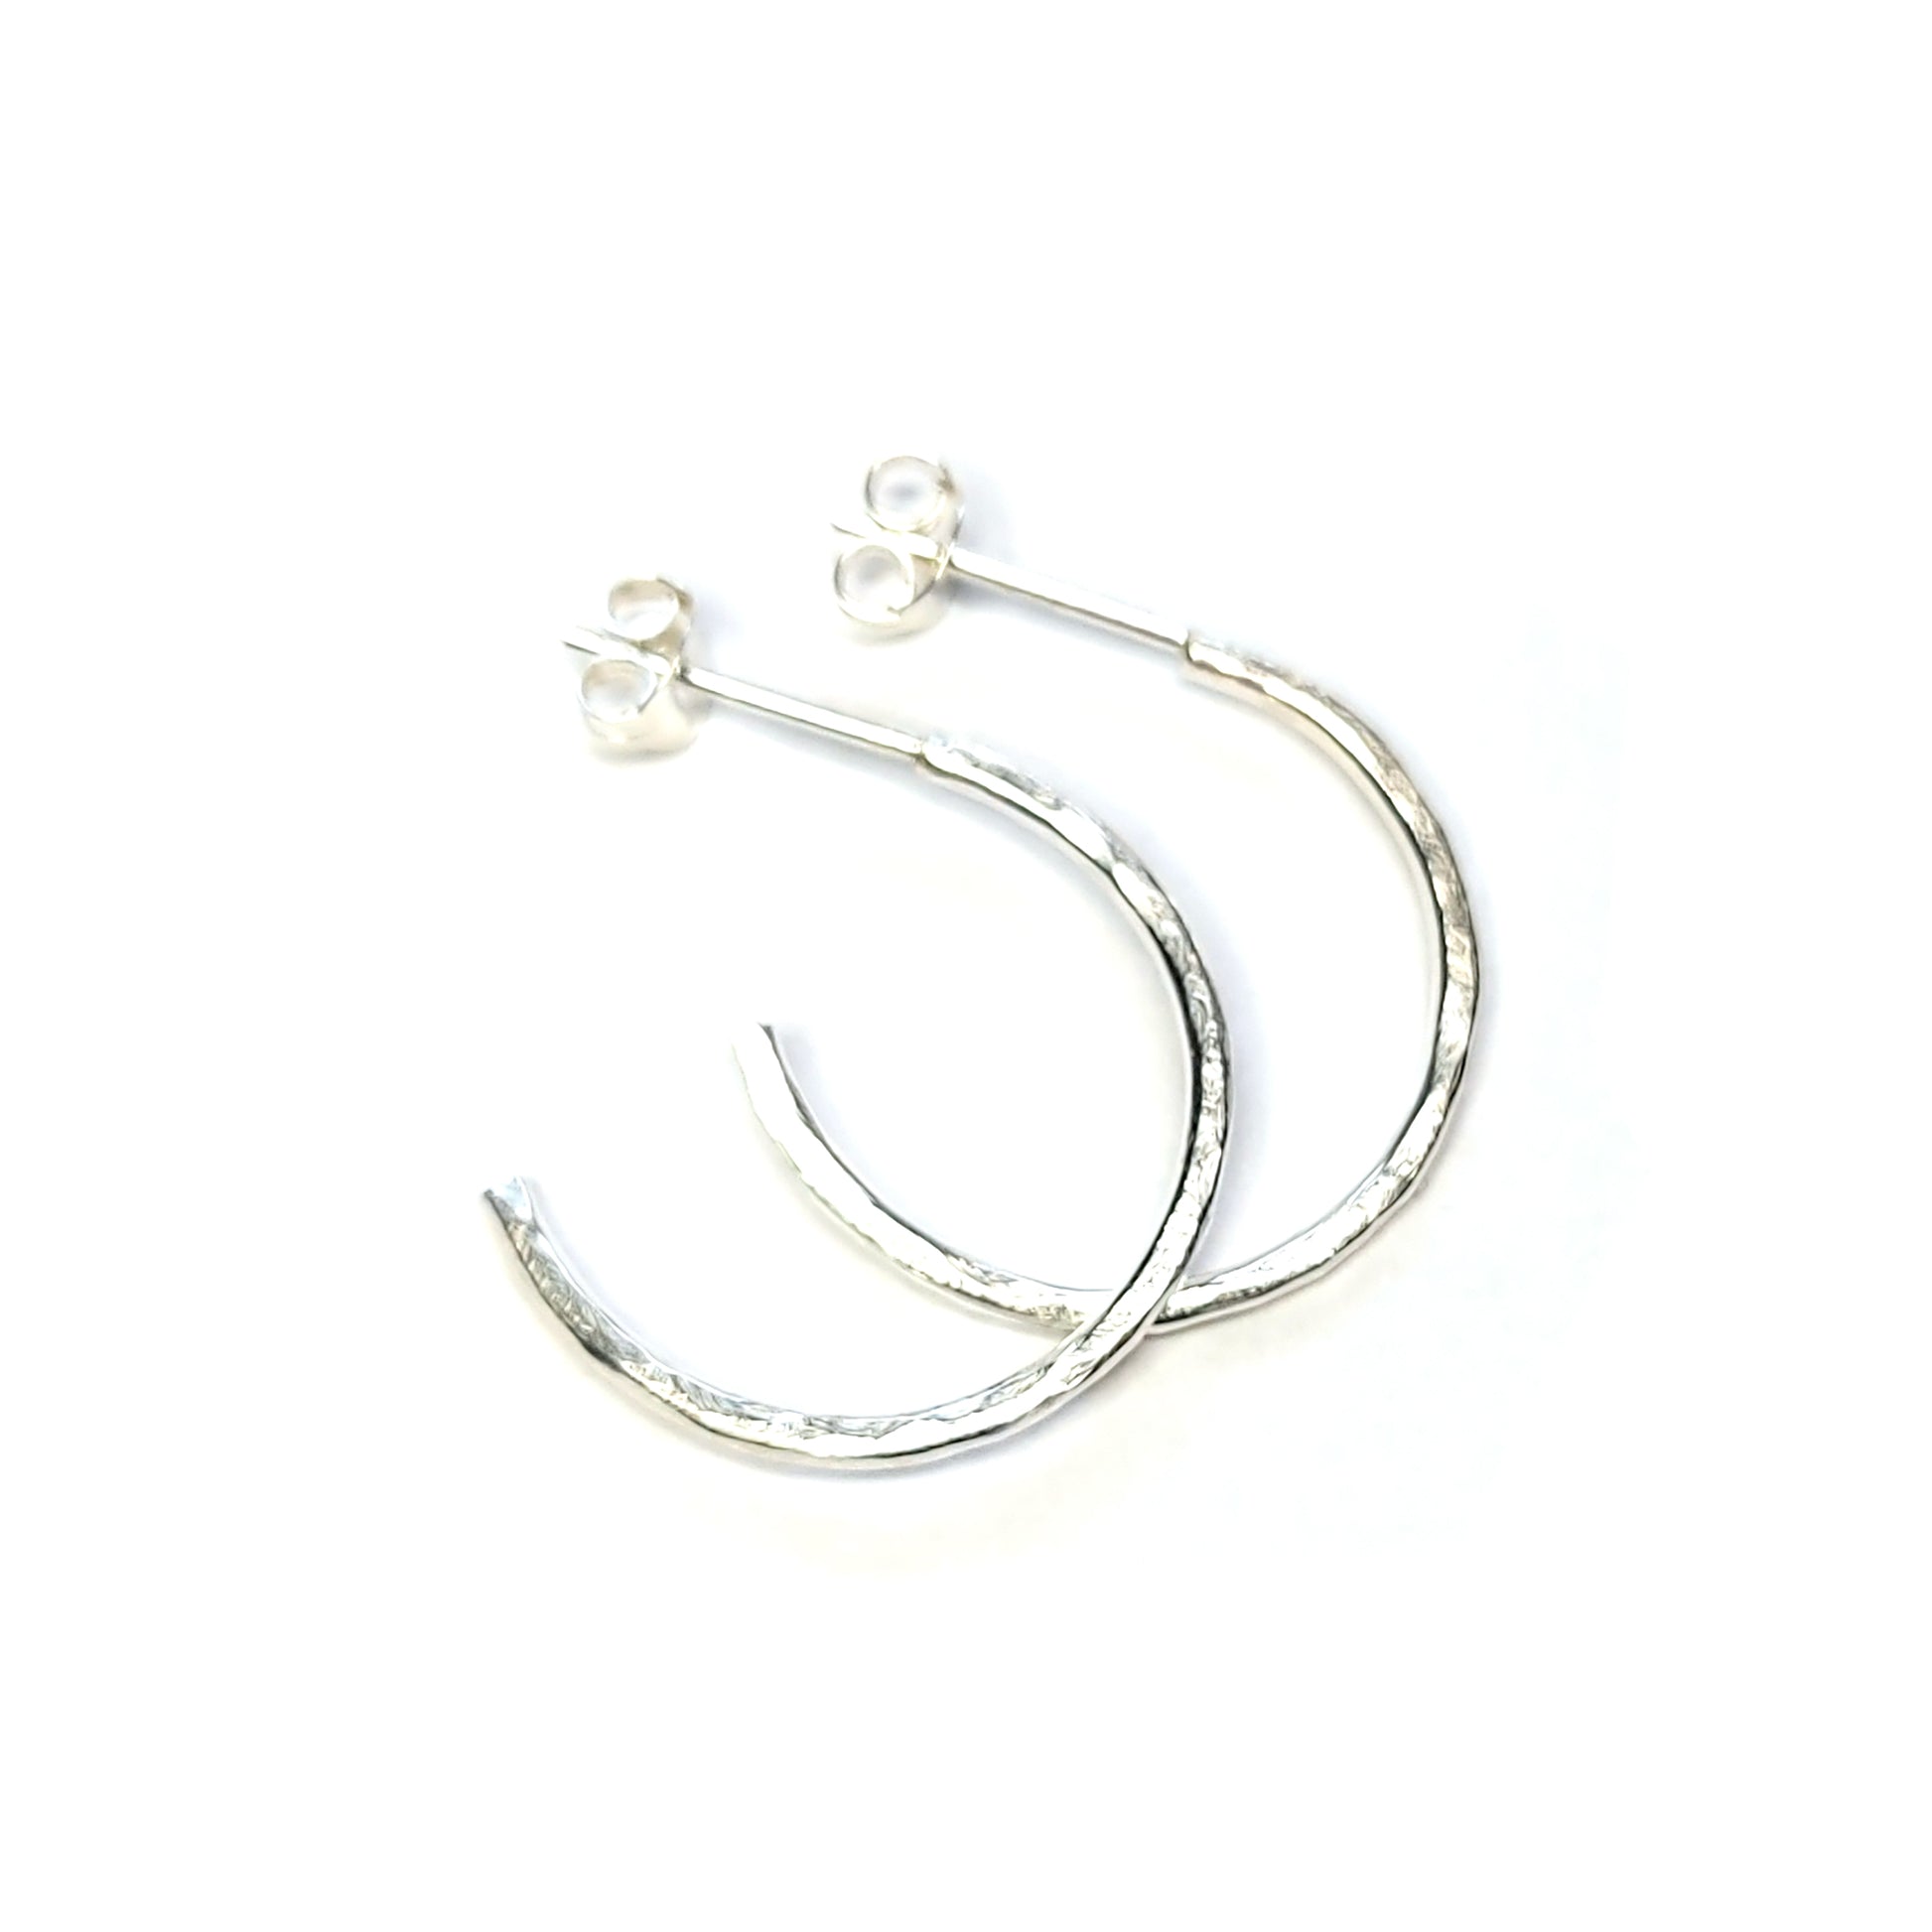 Silver thin hammered hoop earrings - medium.